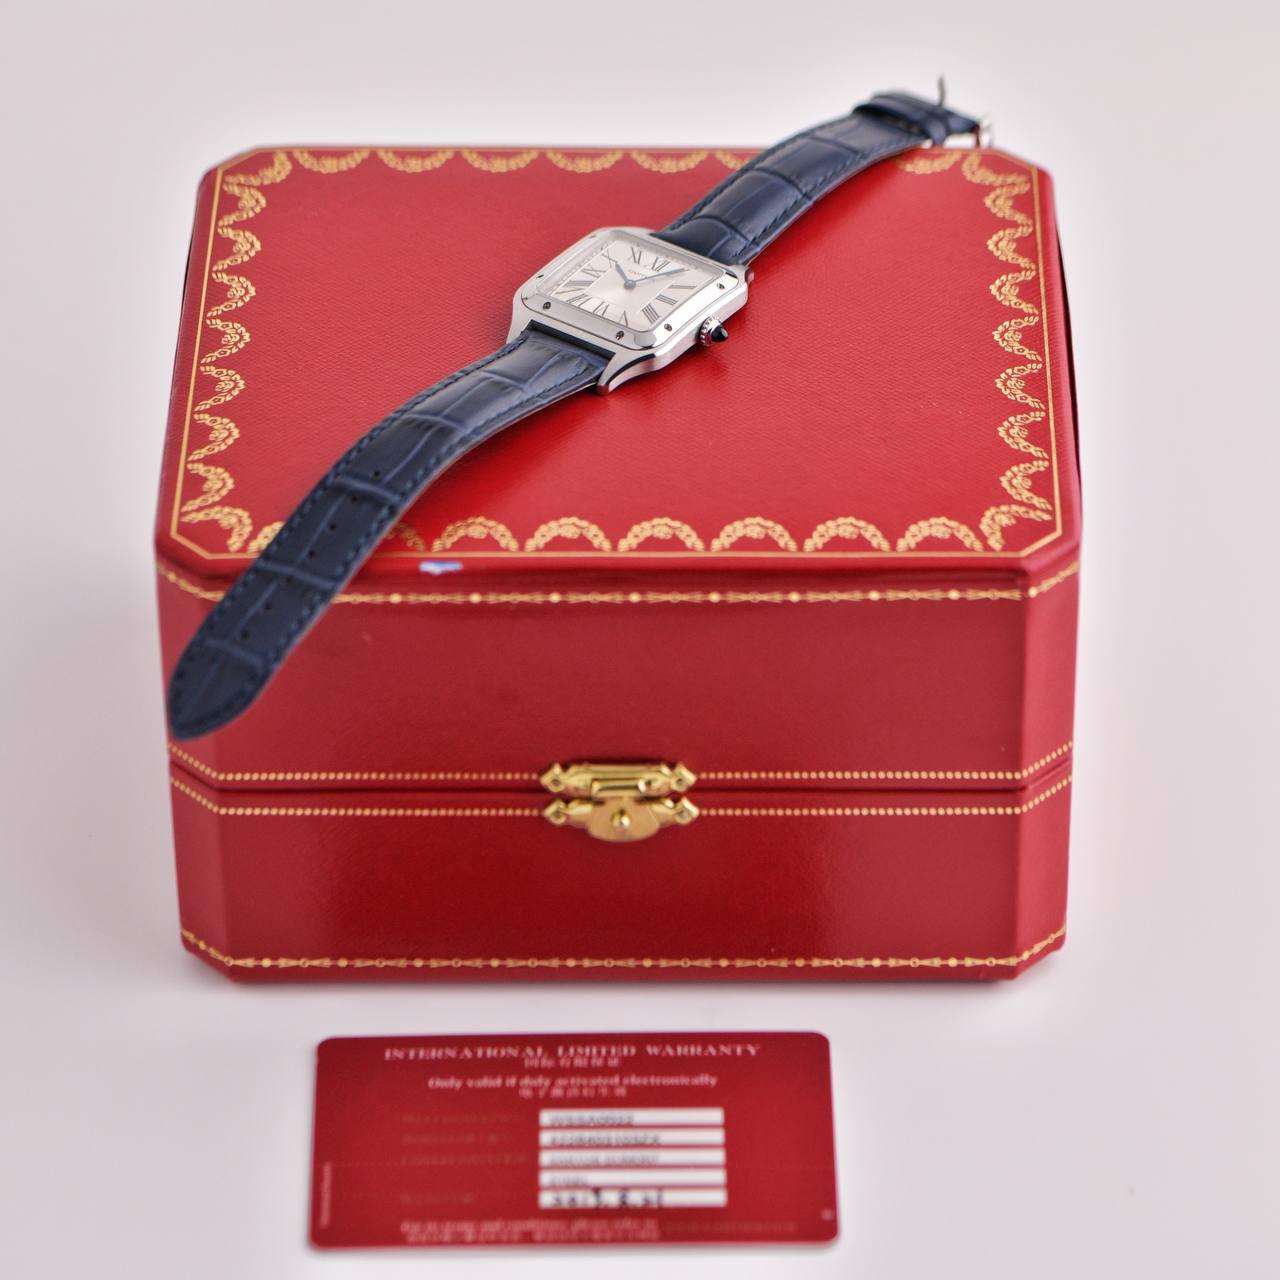 SKU AT-1817
Marque Cartier
Modèle n° WSSA0022
Prix de vente au détail £4,000incl. TVA / 4 200 $ / 4 500 € TTC
____________________________________
Date Circa 2019
Sexe Unisexe / Femmes
Boîte/Papiers Oui/